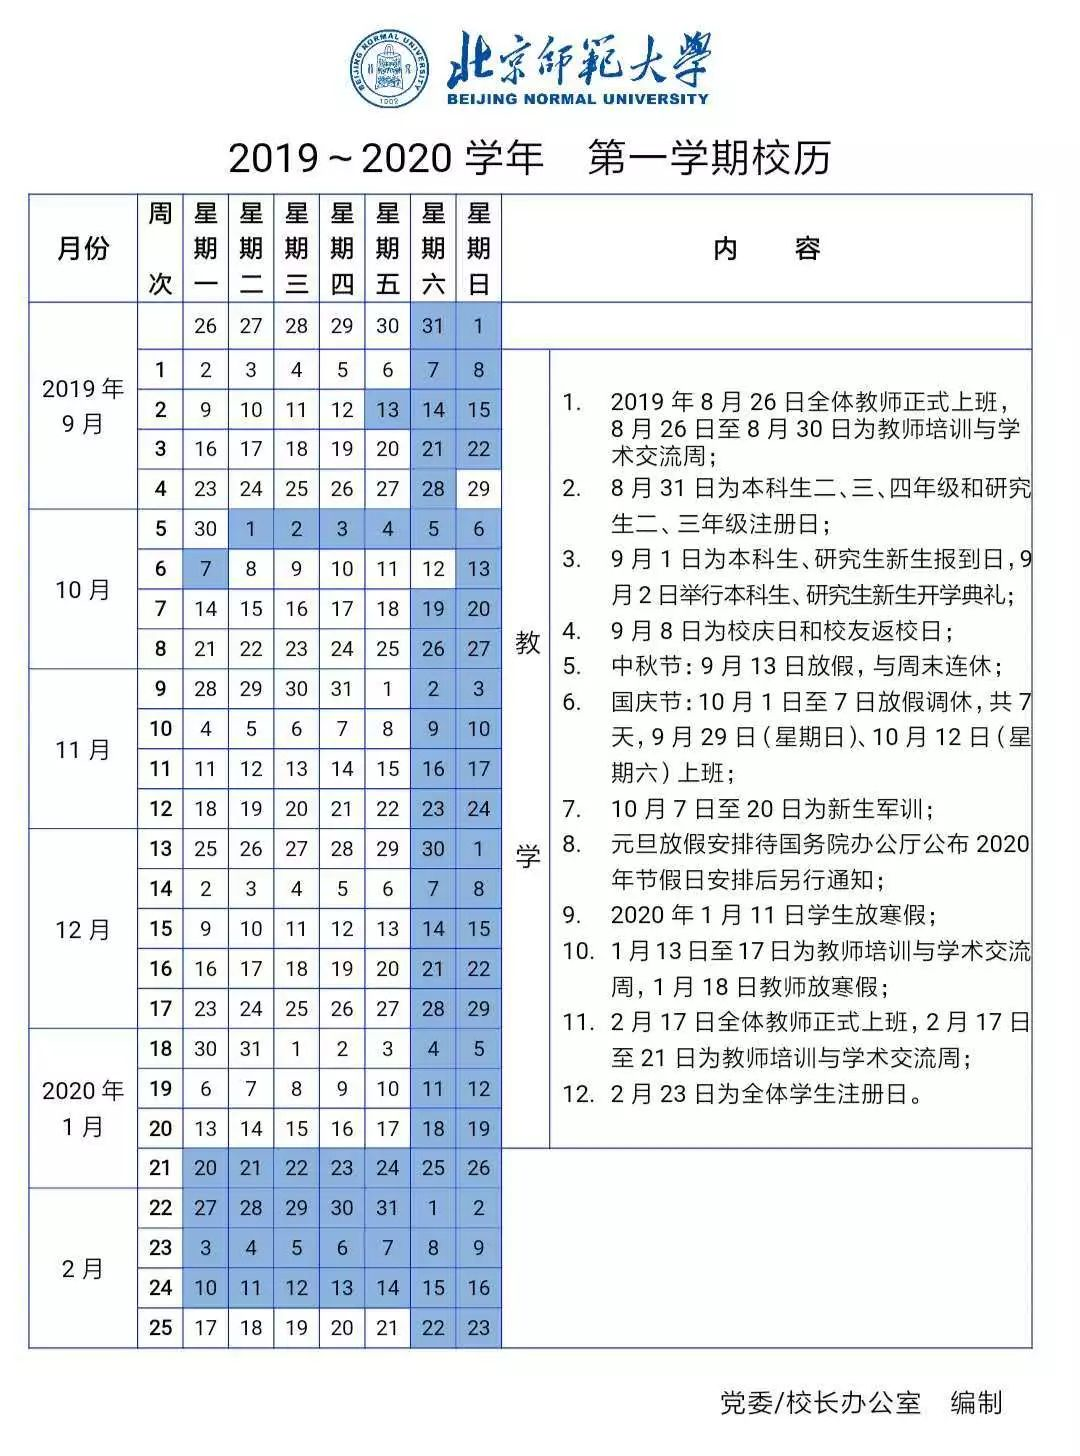 北京师范大学2019-2020学年第一学期校历